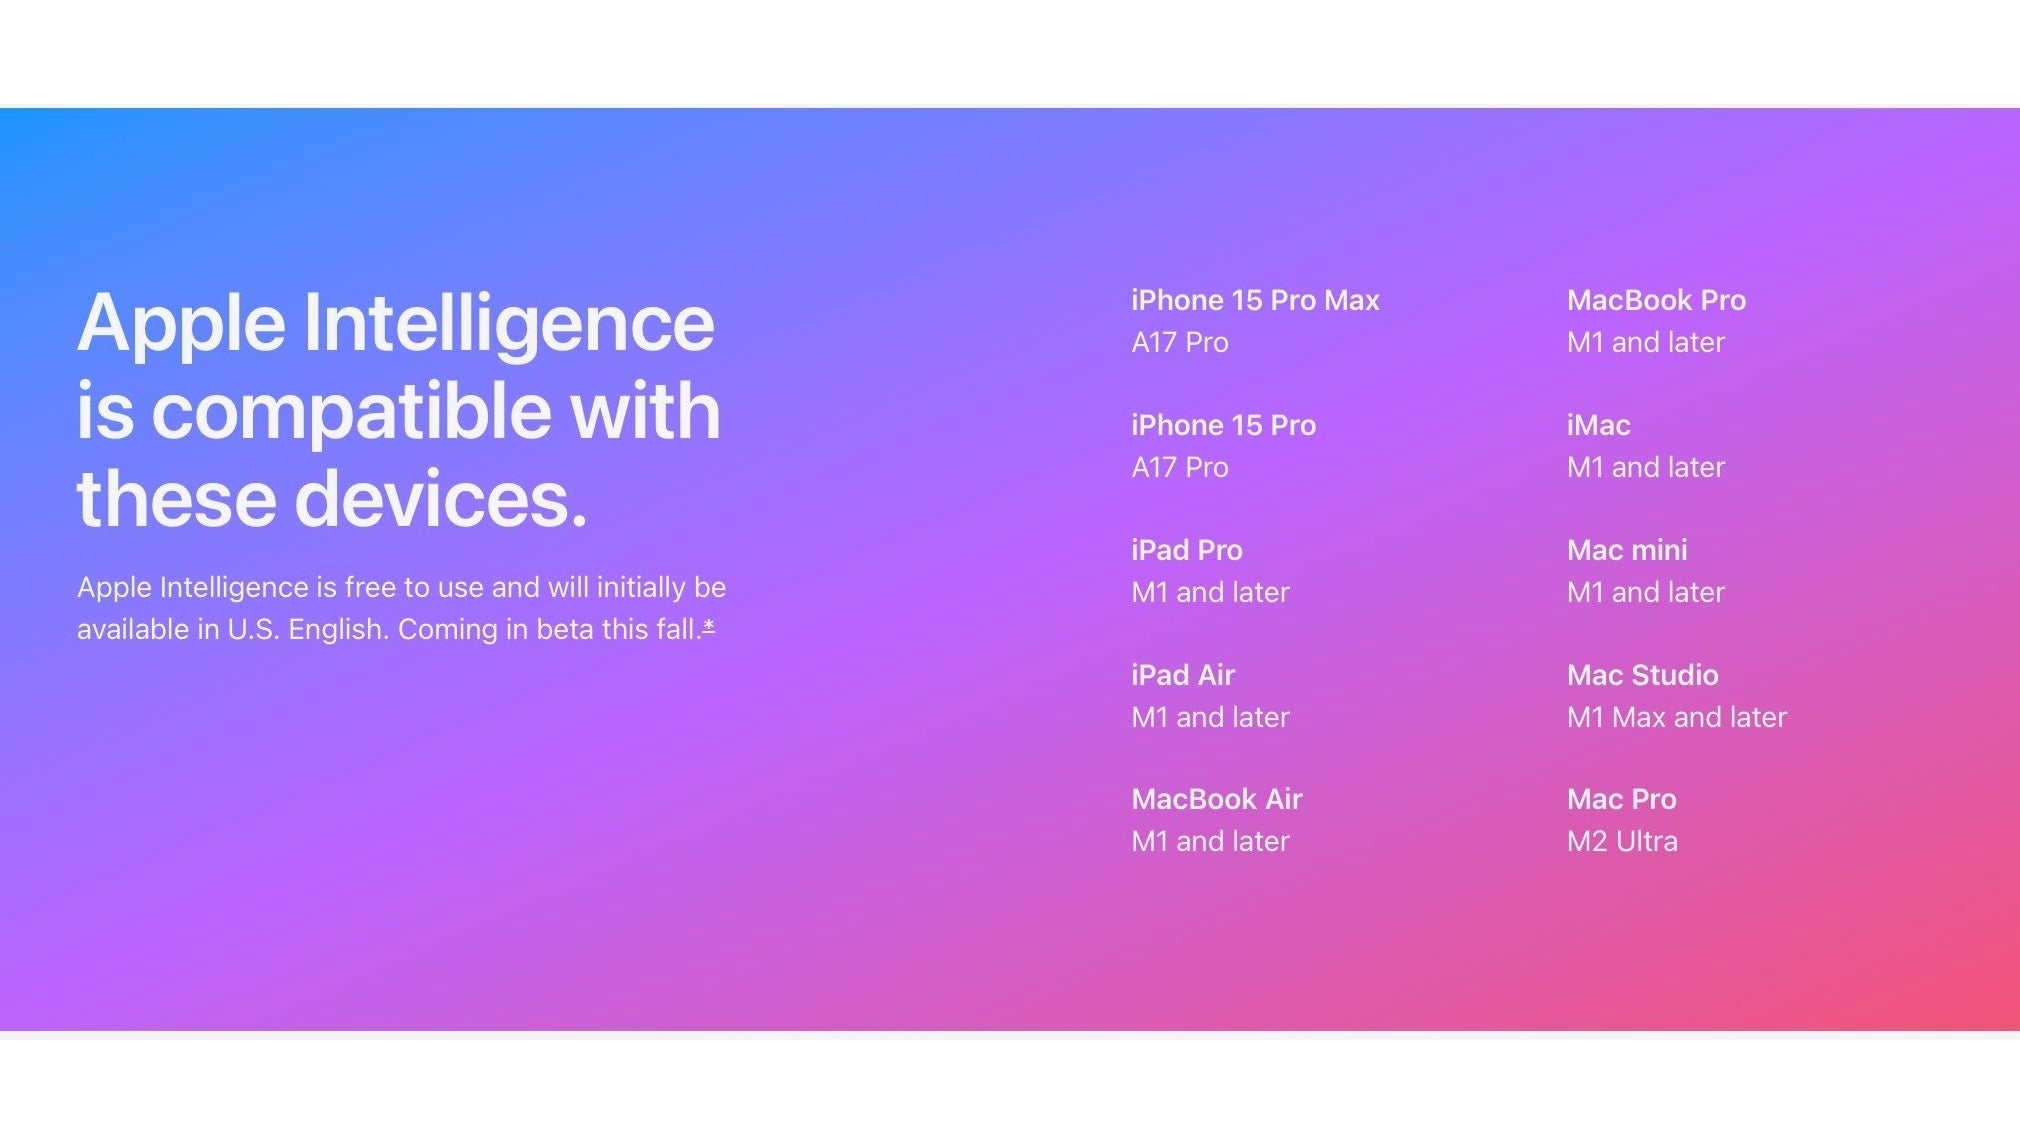 „Neue Apple-Intelligenz in iOS 18 wird nur auf 50 % der neuesten Flaggschiff-iPhones verfügbar sein.“ Klingt verrückt, wenn man es so ausdrückt. – Apple hat keine Ausreden, da iOS 18 Millionen enttäuscht: Keine KI, es sei denn, Sie kaufen ein 1.000-Dollar-iPhone 15 Pro